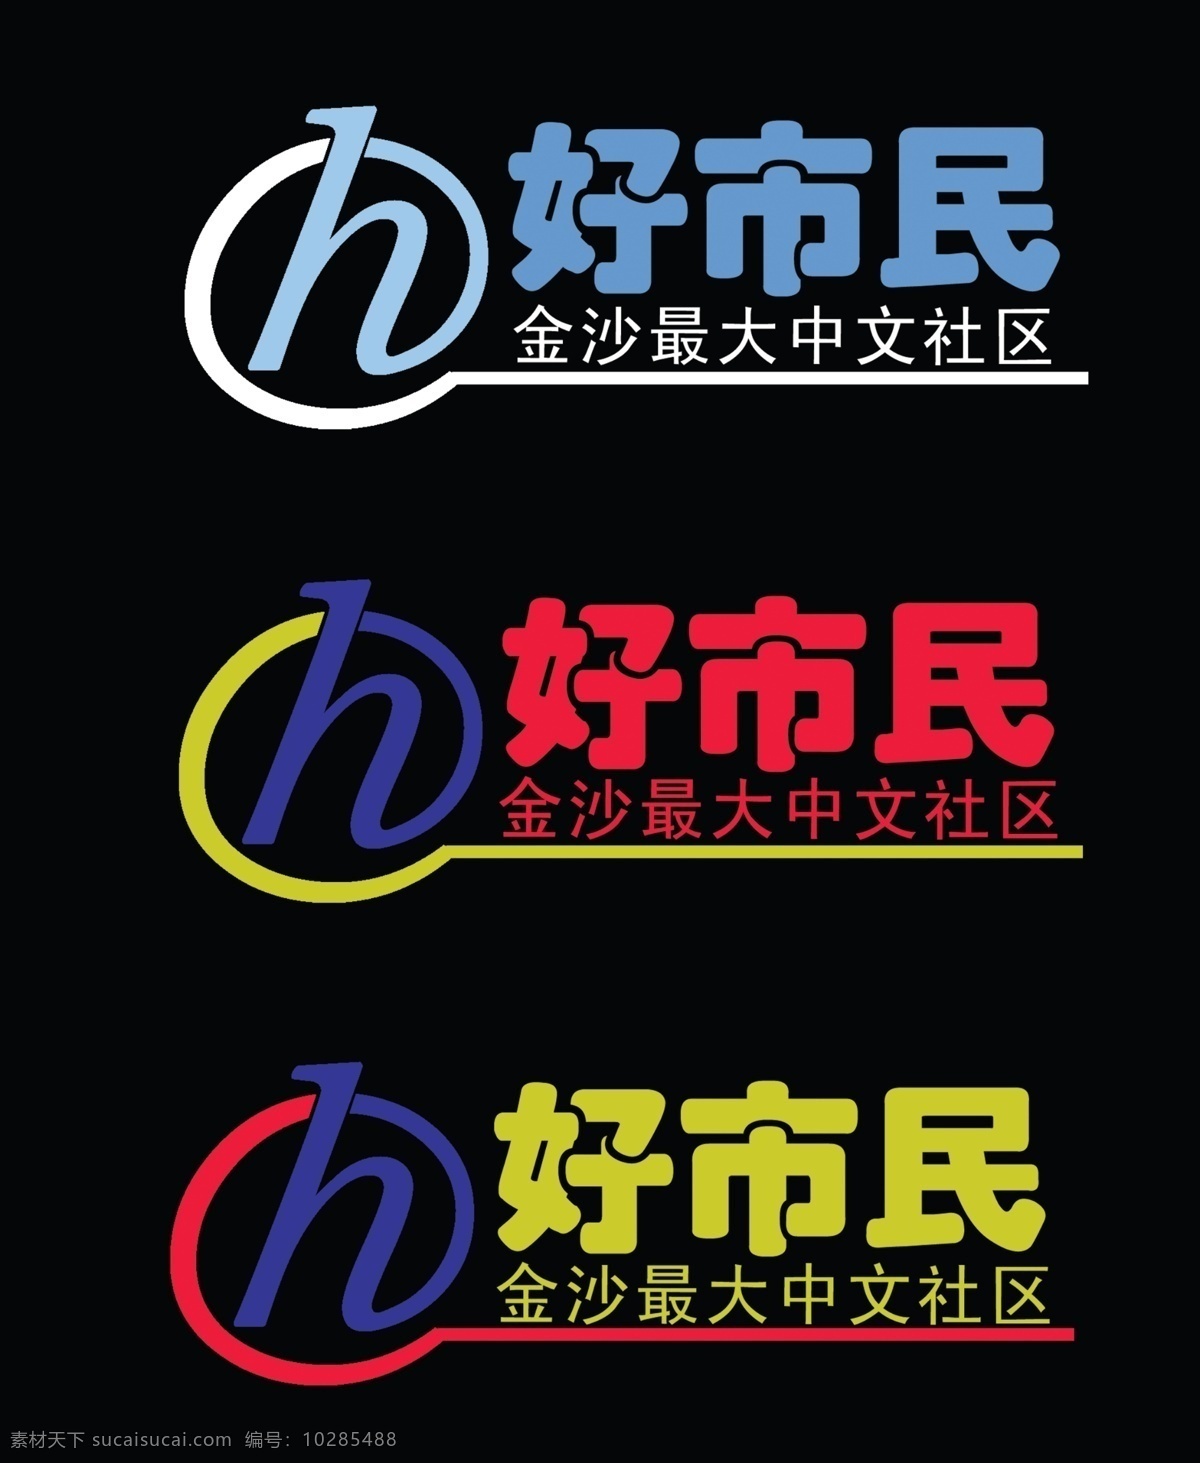 好 市民 logo 标志设计 广告设计模板 源文件 檬忻駆ogo 好市民 好市民网 金沙 最大 中文社区 psd源文件 logo设计